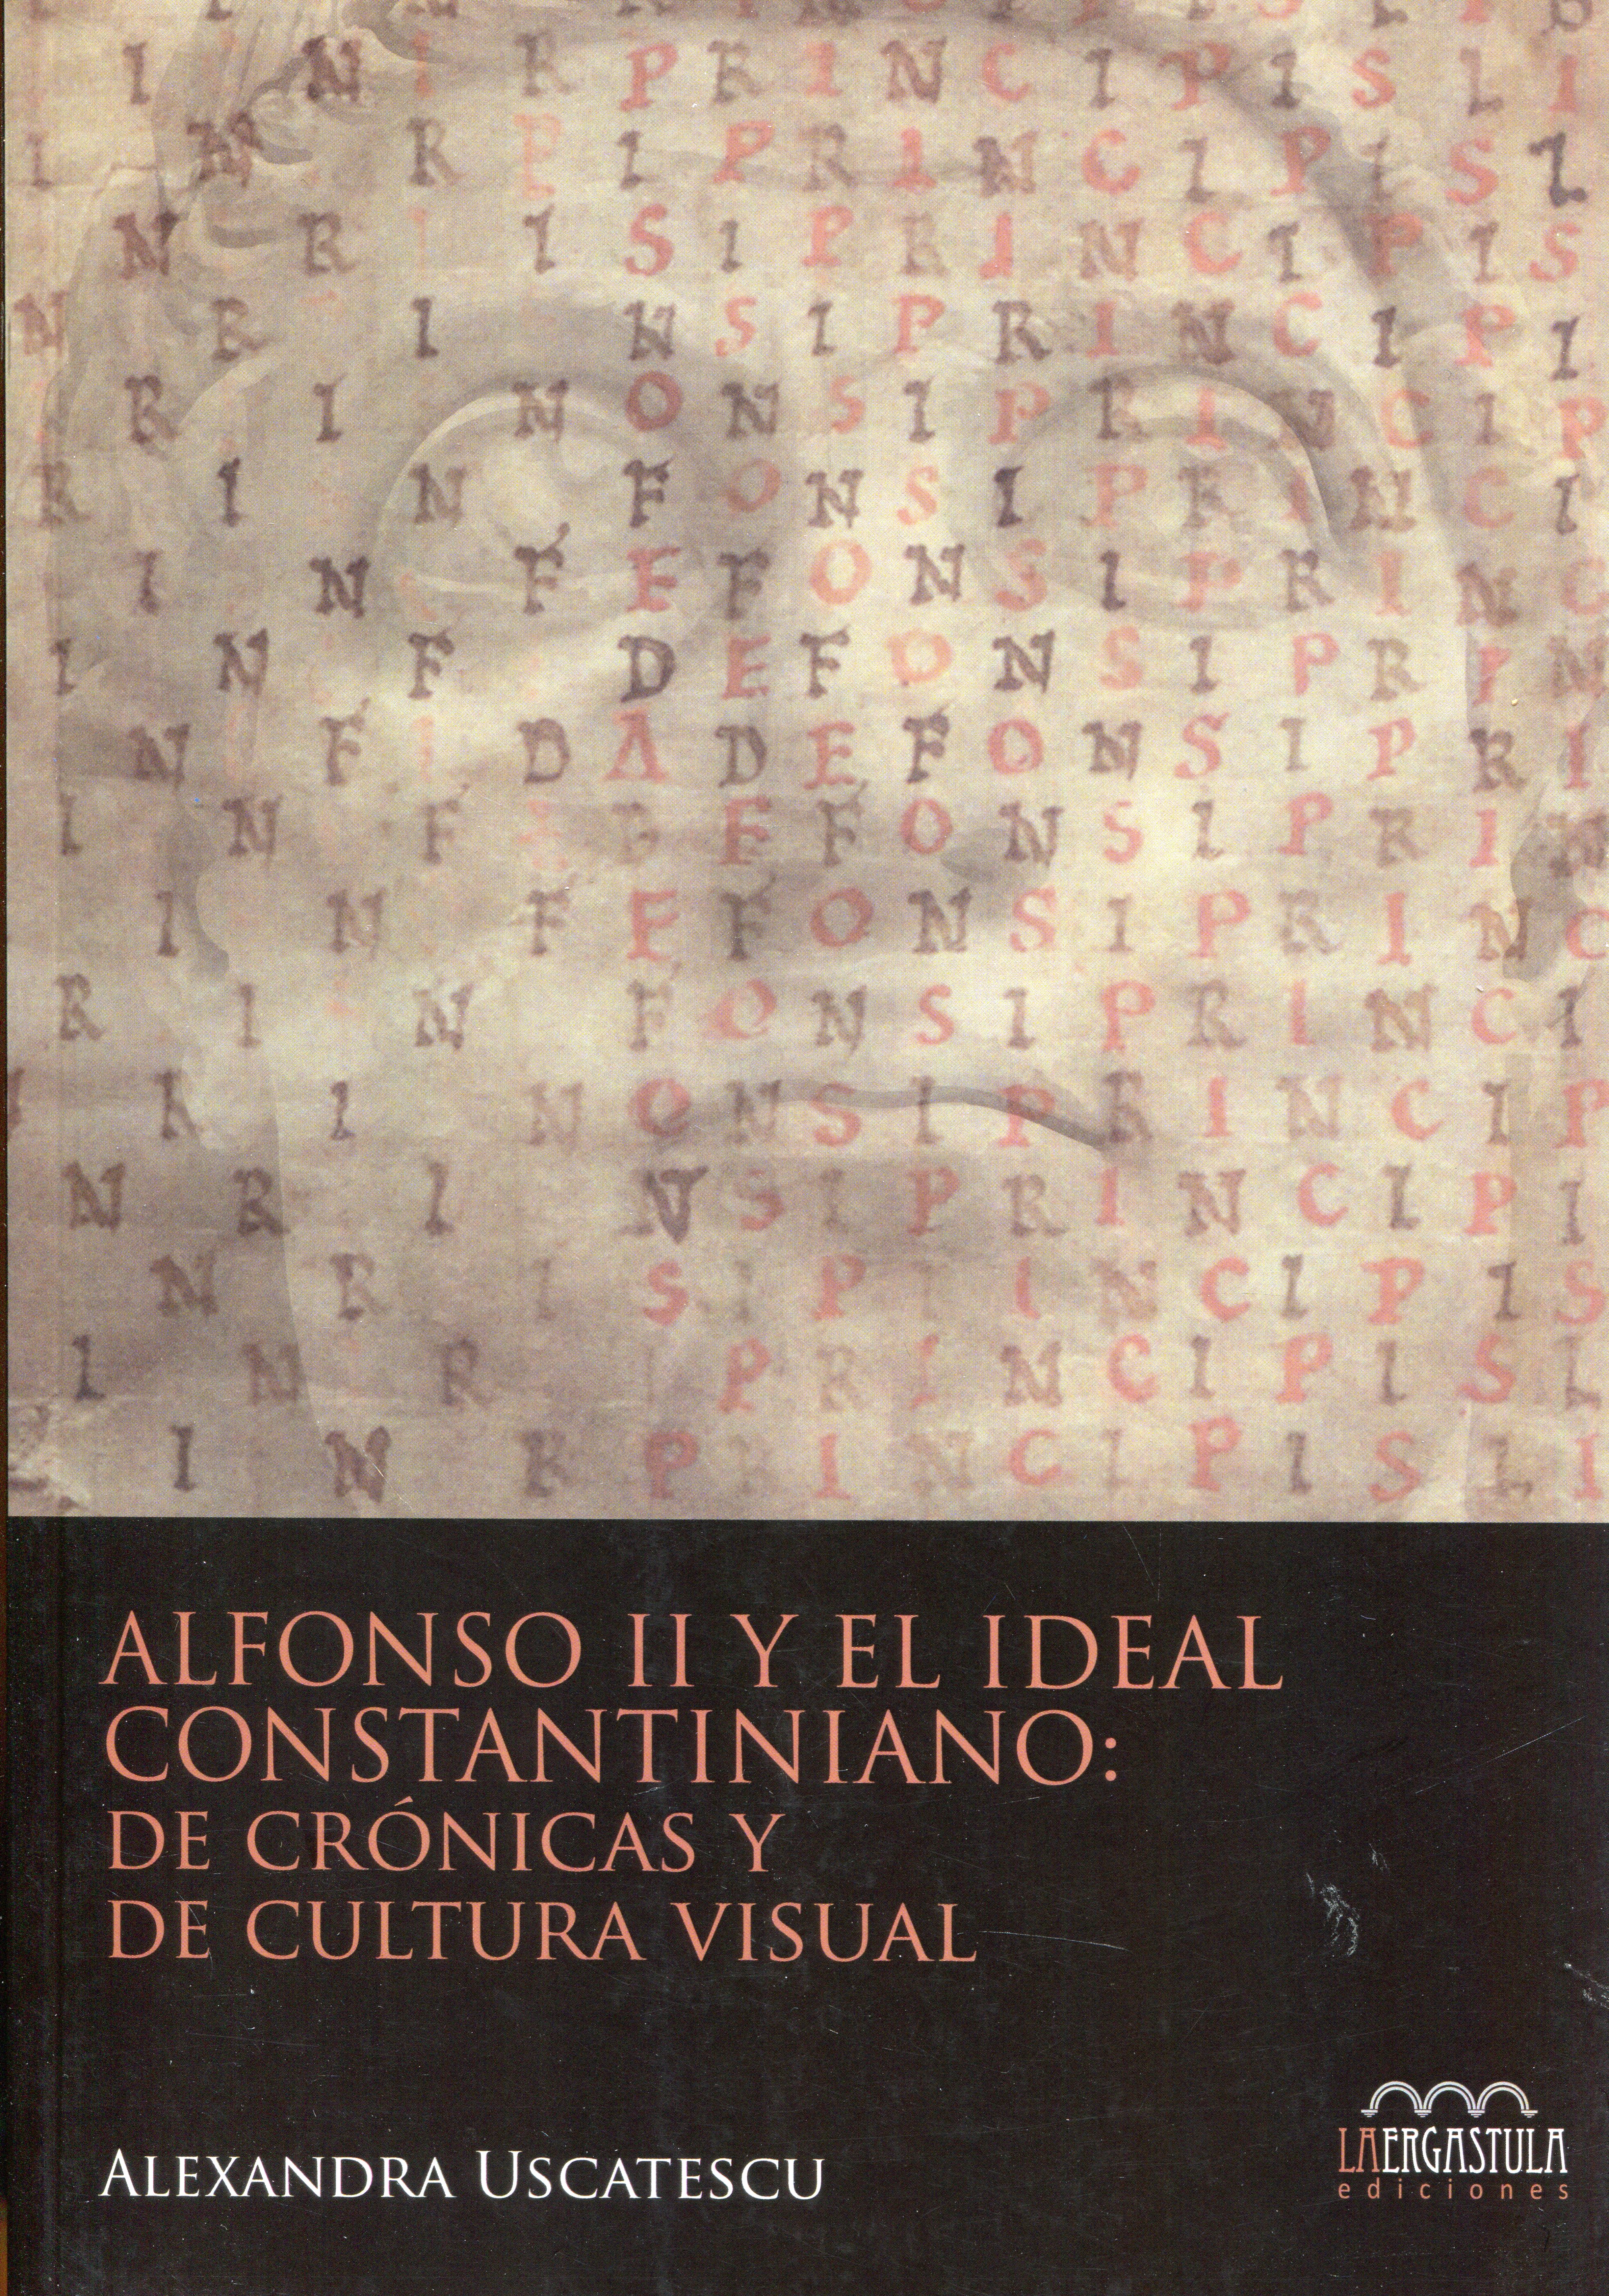 Alfonso II y el ideal constantiniano